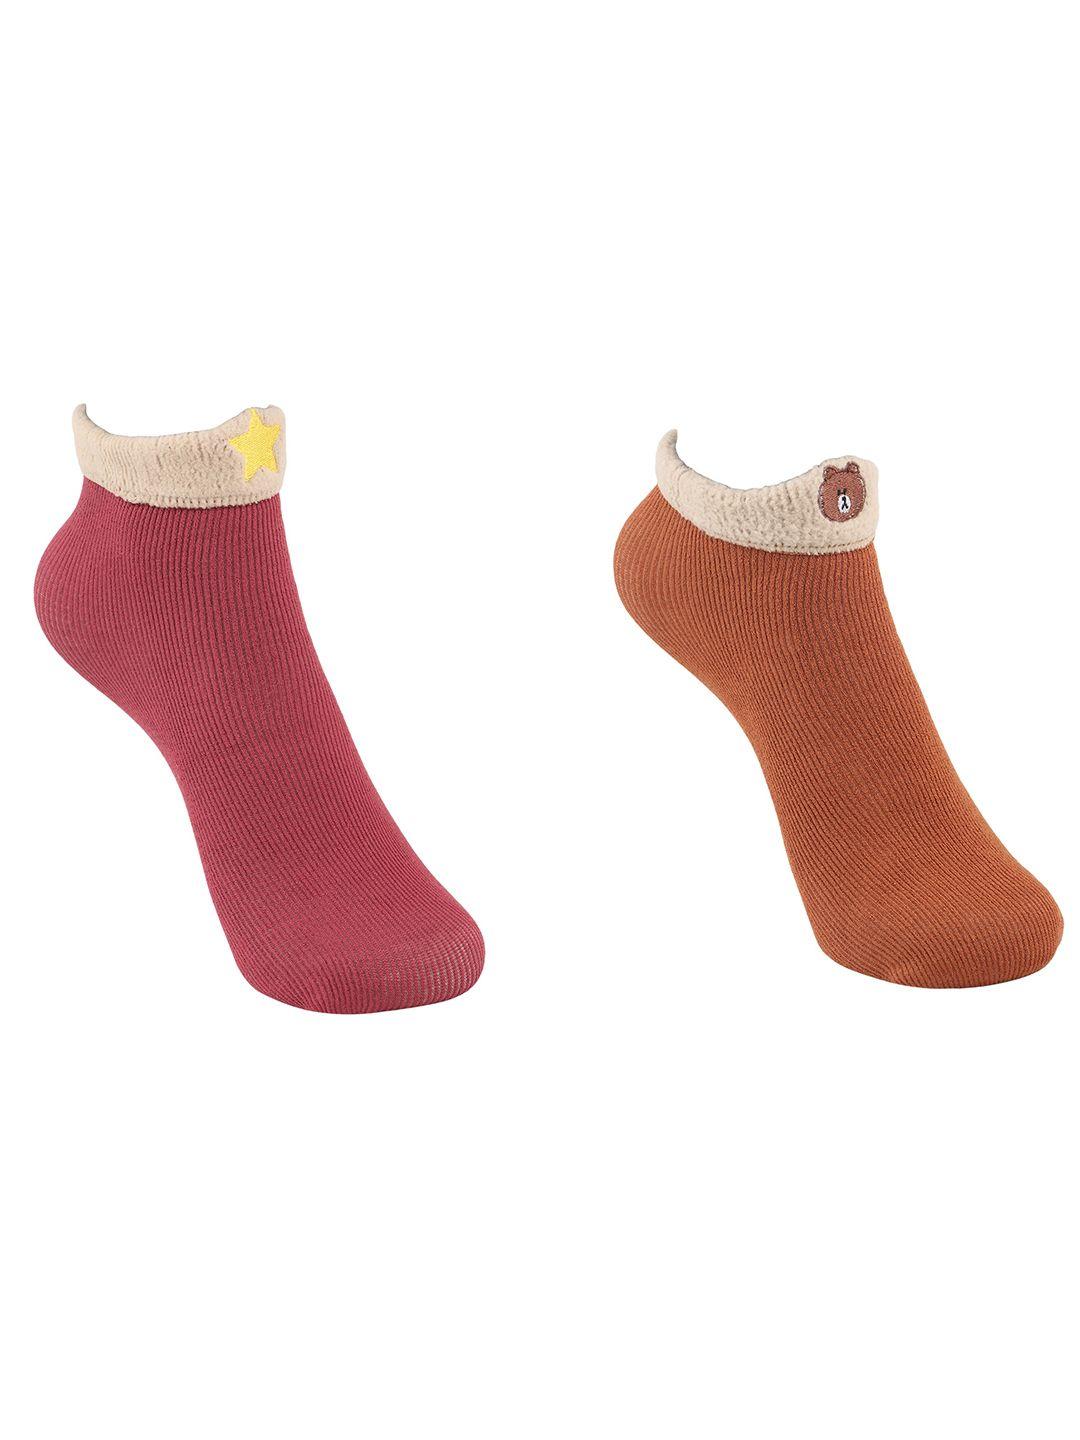 baesd kids pack of 2 patterned ankle-length socks